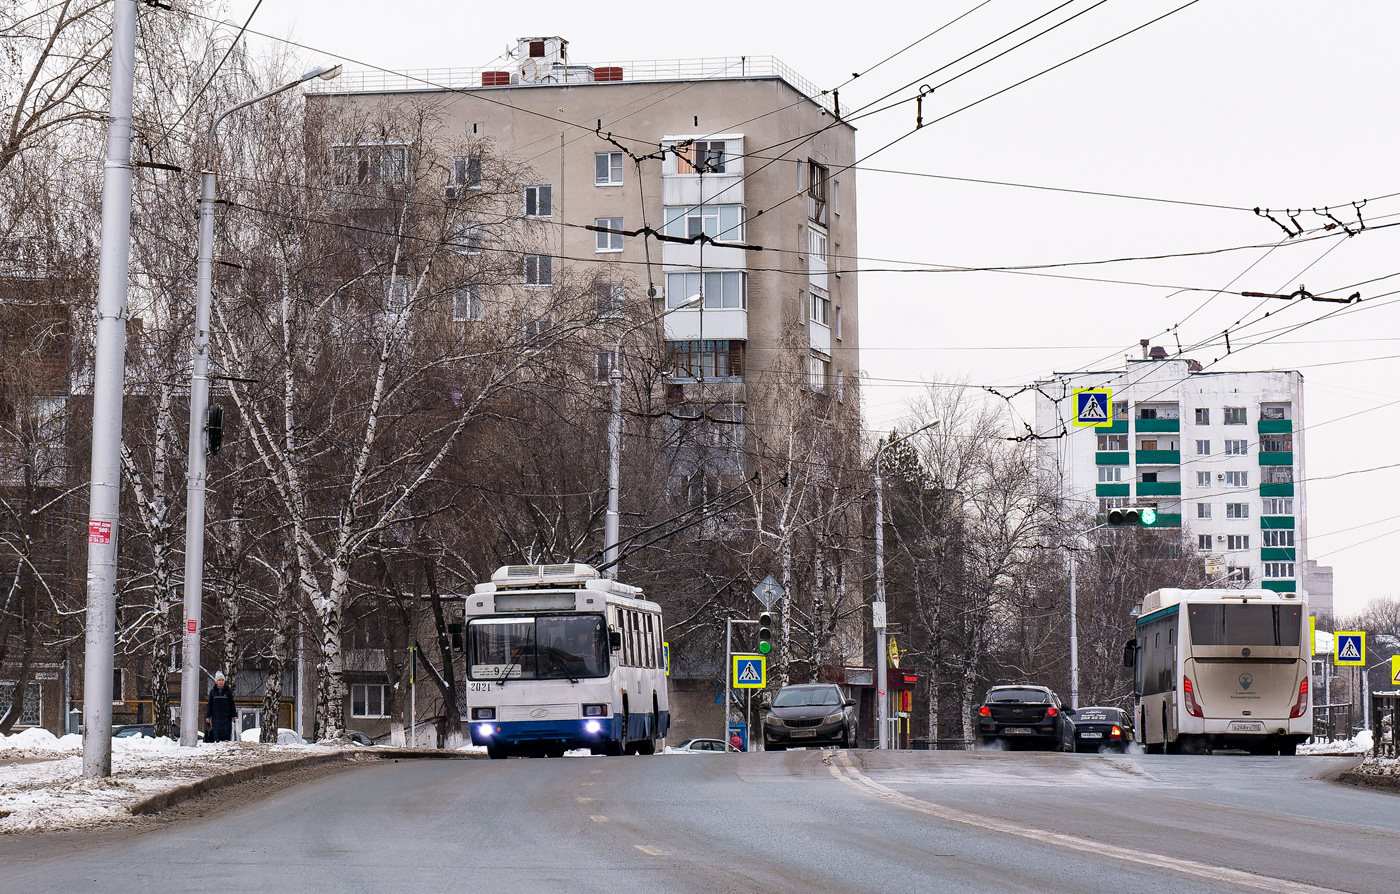 Ufa — Trolleybus network — North